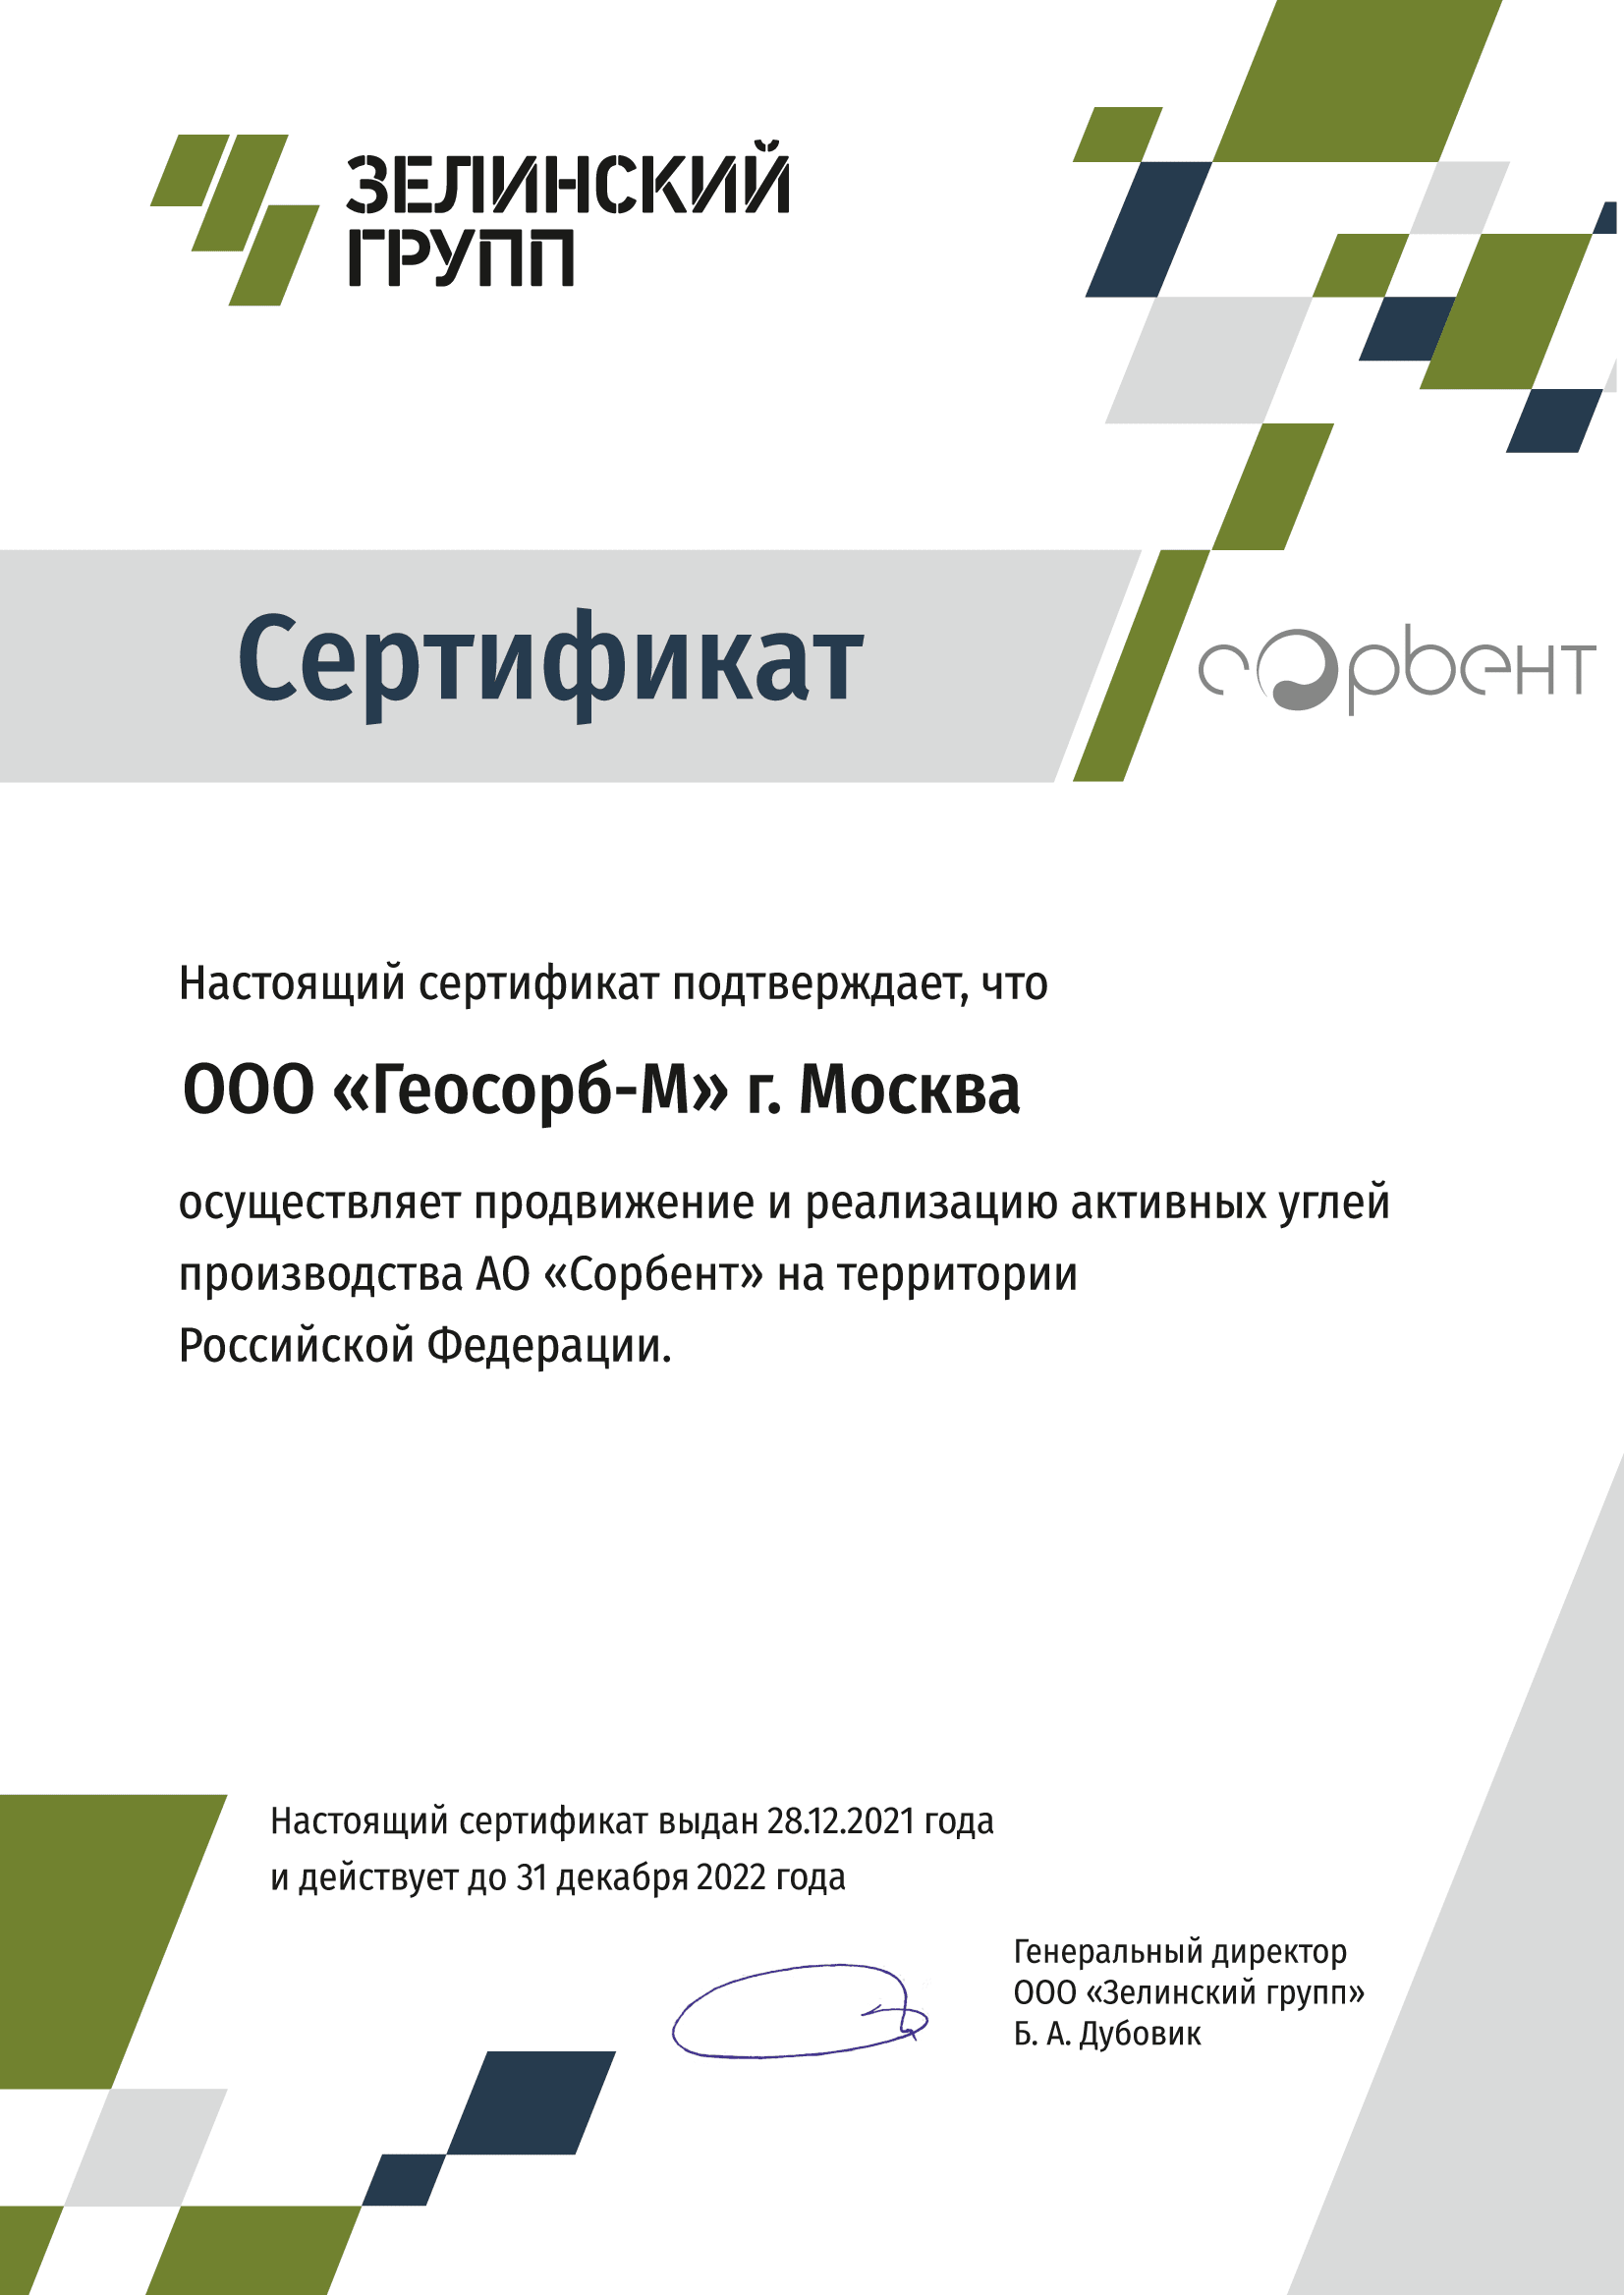 Сертификат партнера АО Сорбент